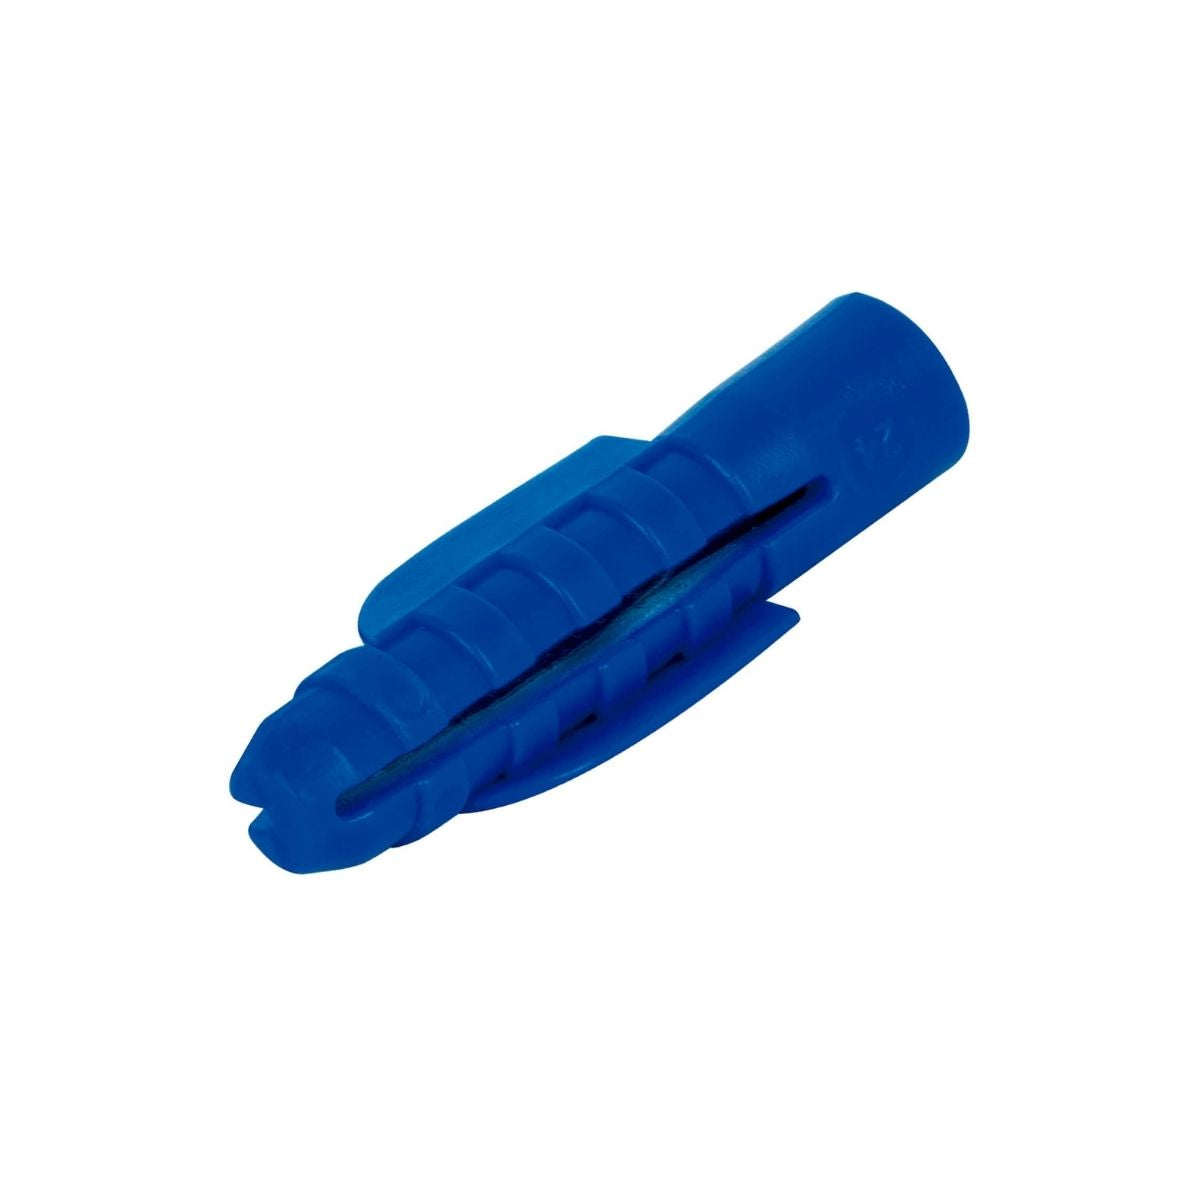 Taquete Plástico 3/8" Bolsa 50 Piezas Azul Fiero 44201